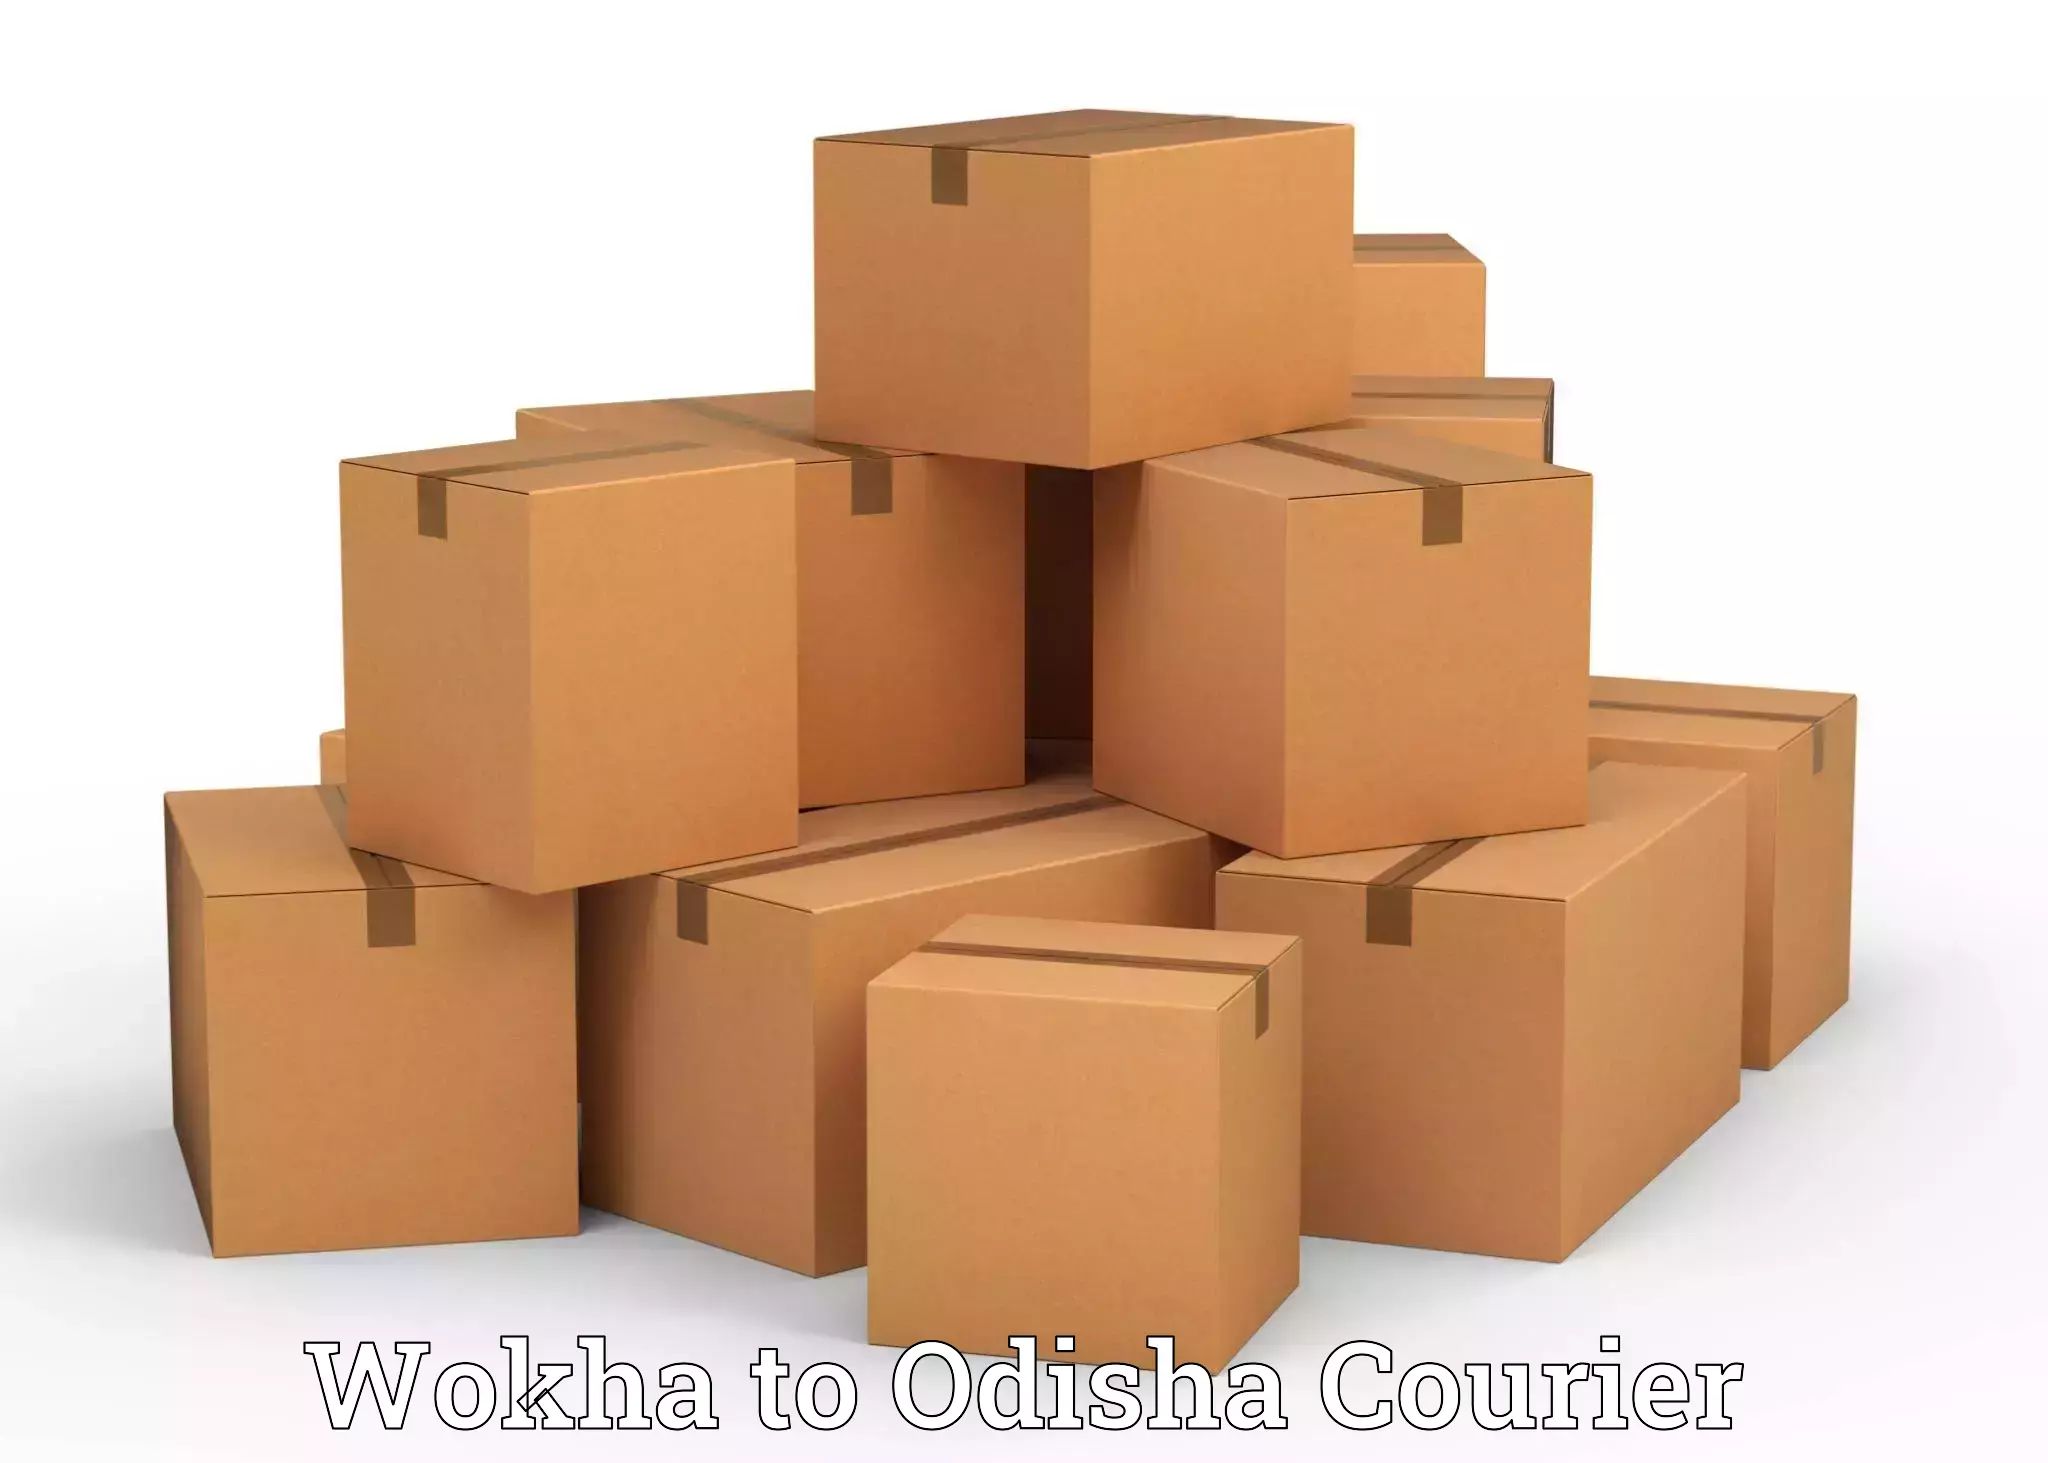 Furniture transport company Wokha to Bonth